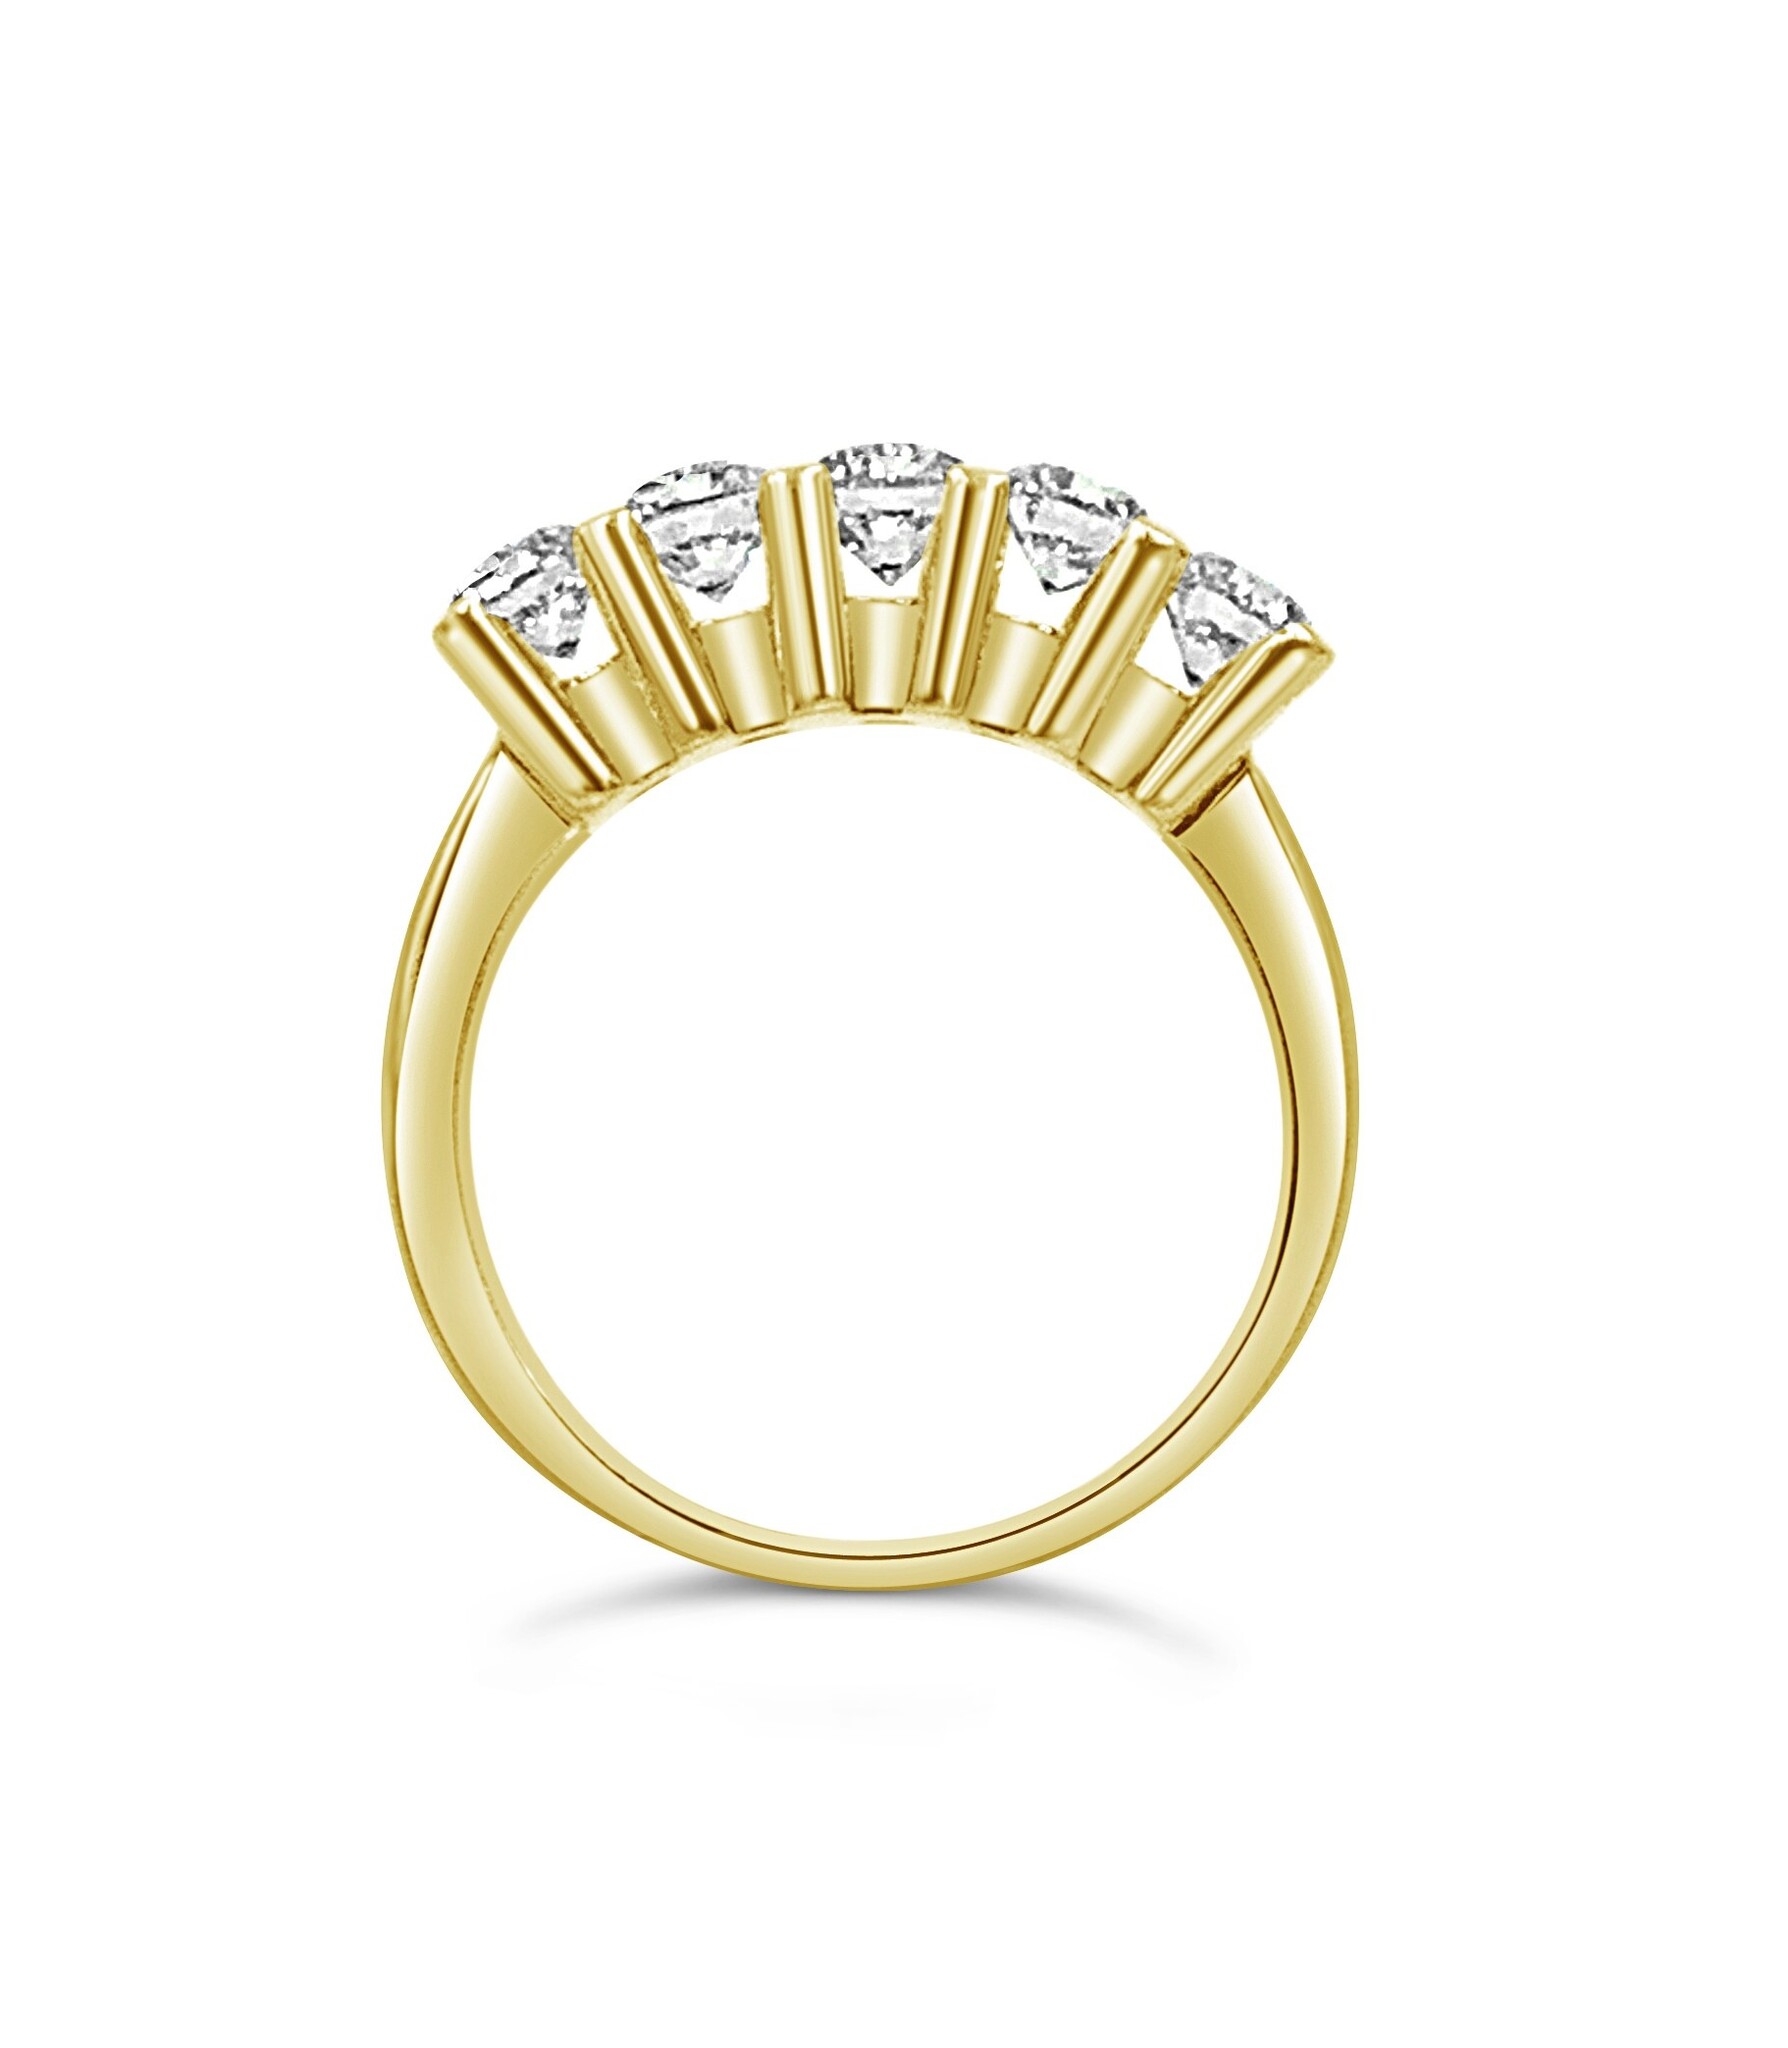 18k geel goud ring met 1,52ct diamanten